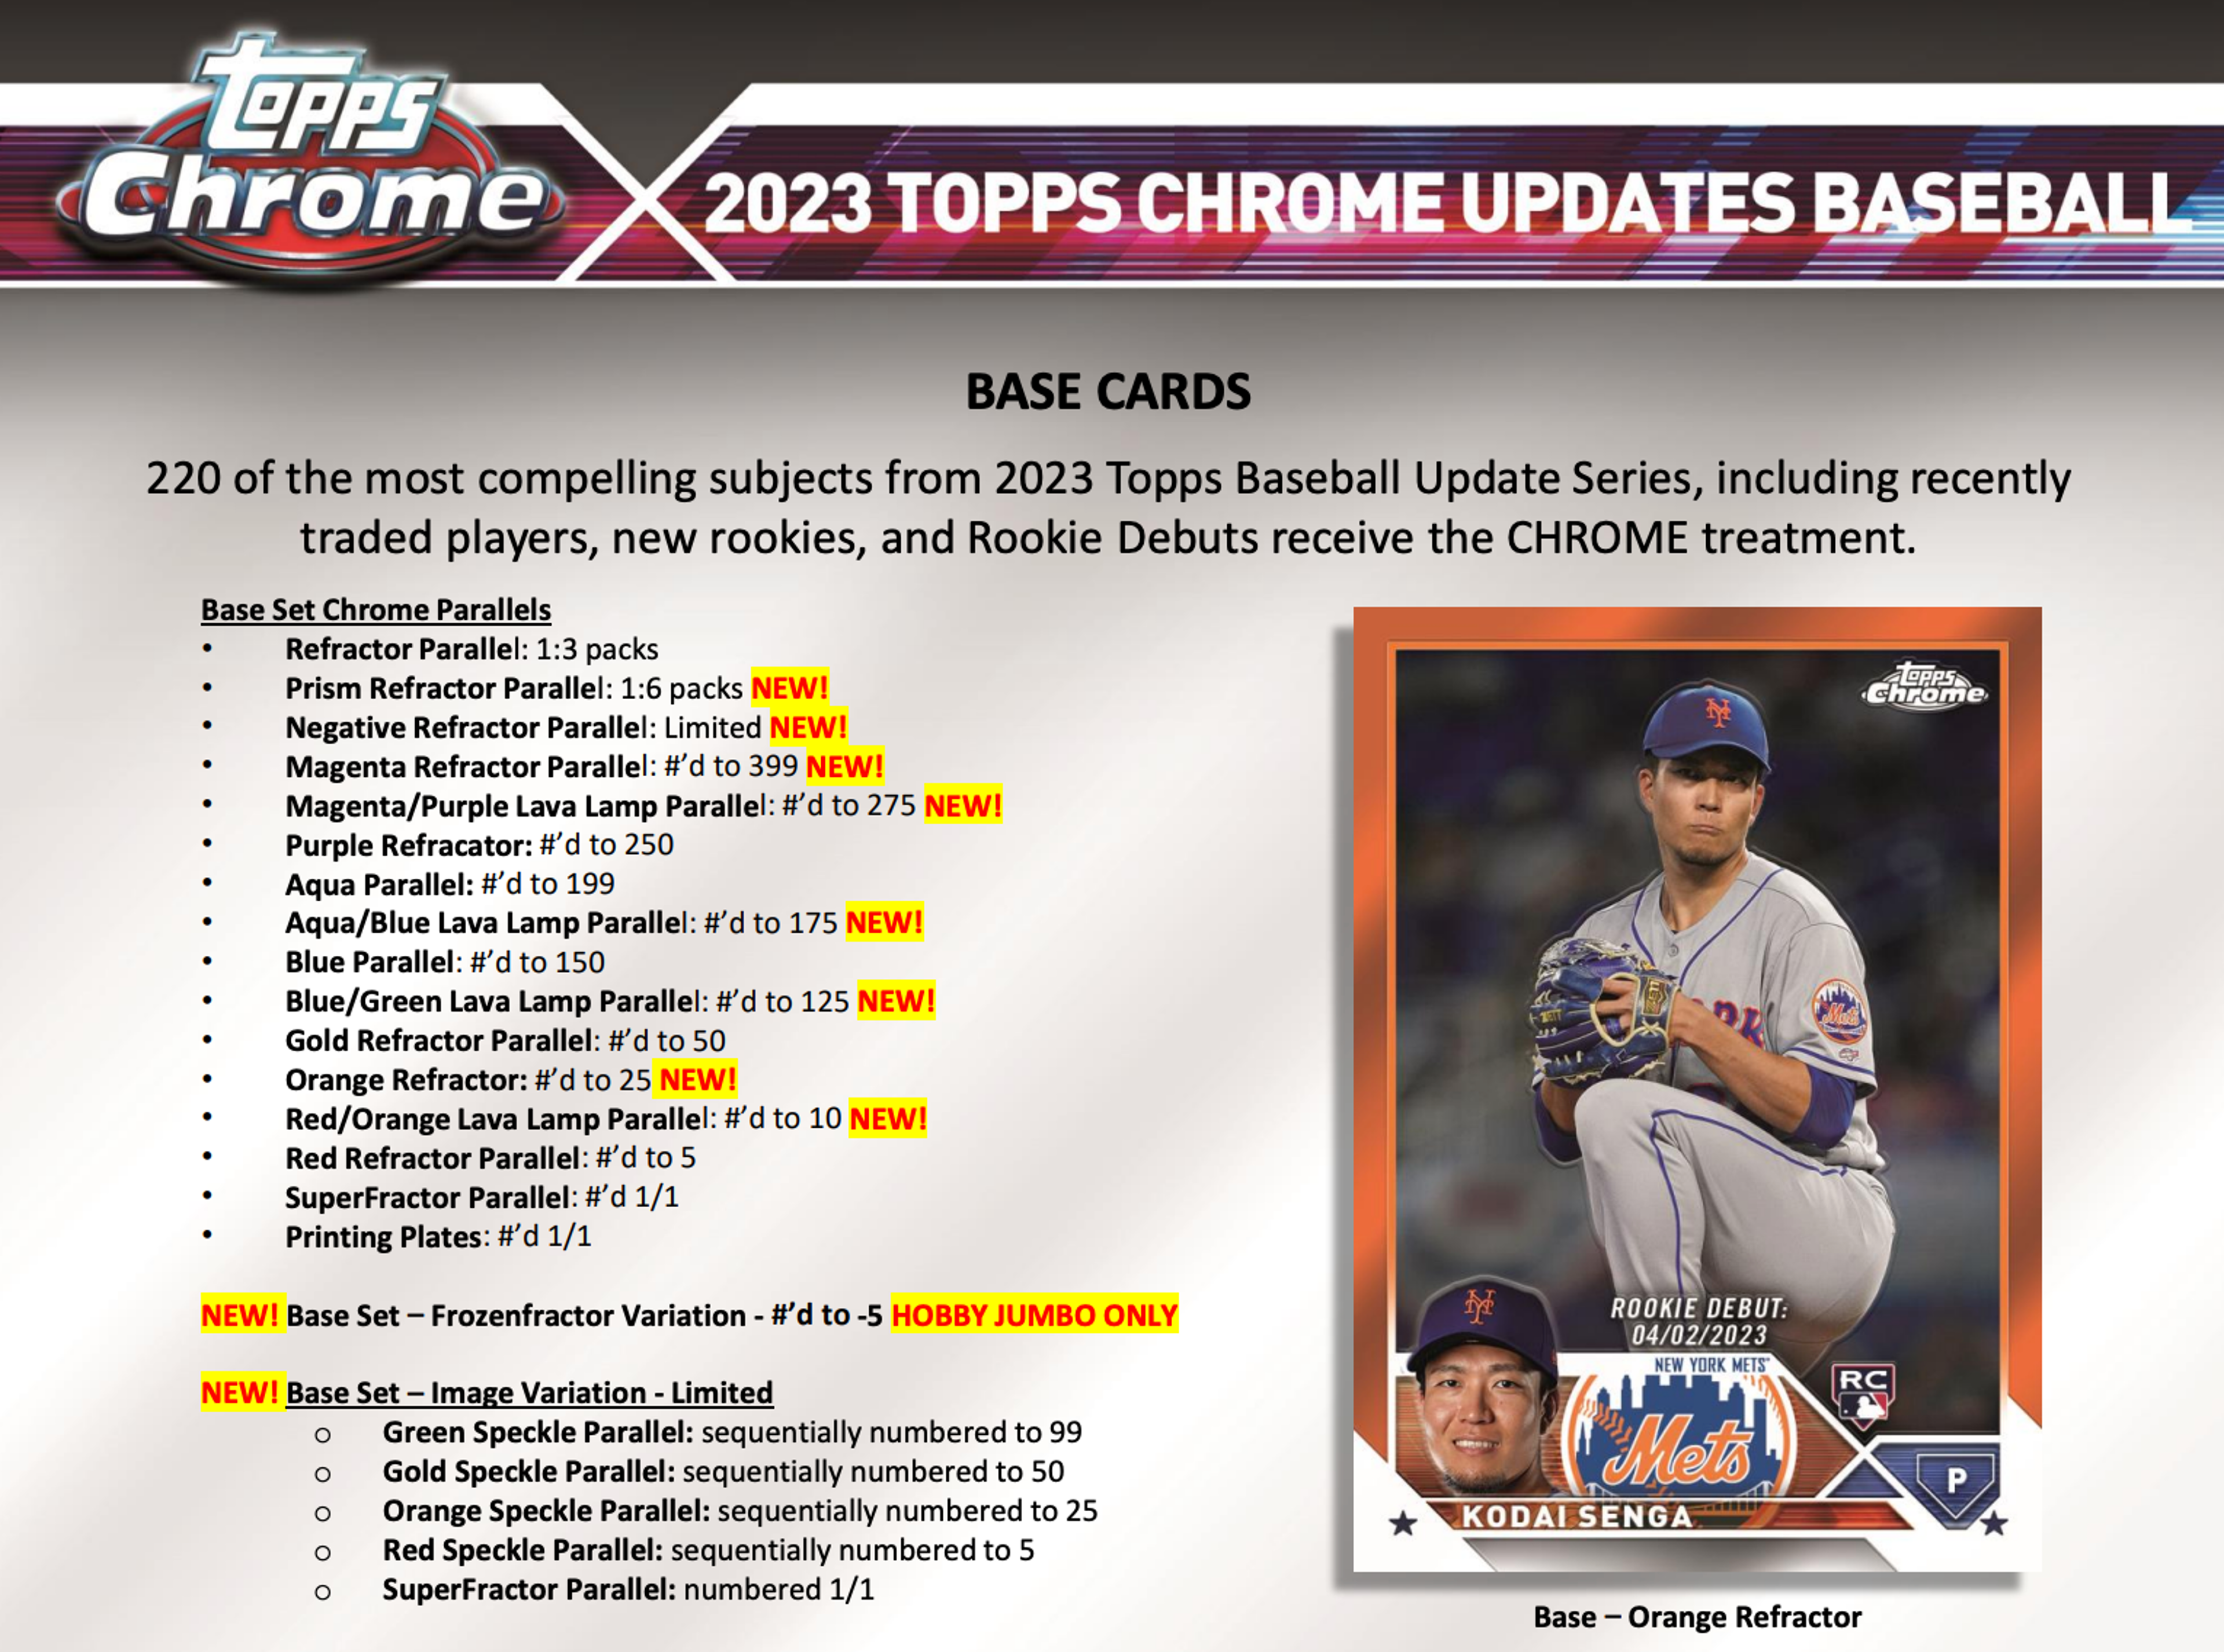 Alternate View 6 of 2023 Topps Chrome Update Series Baseball Breaker's Delight Box